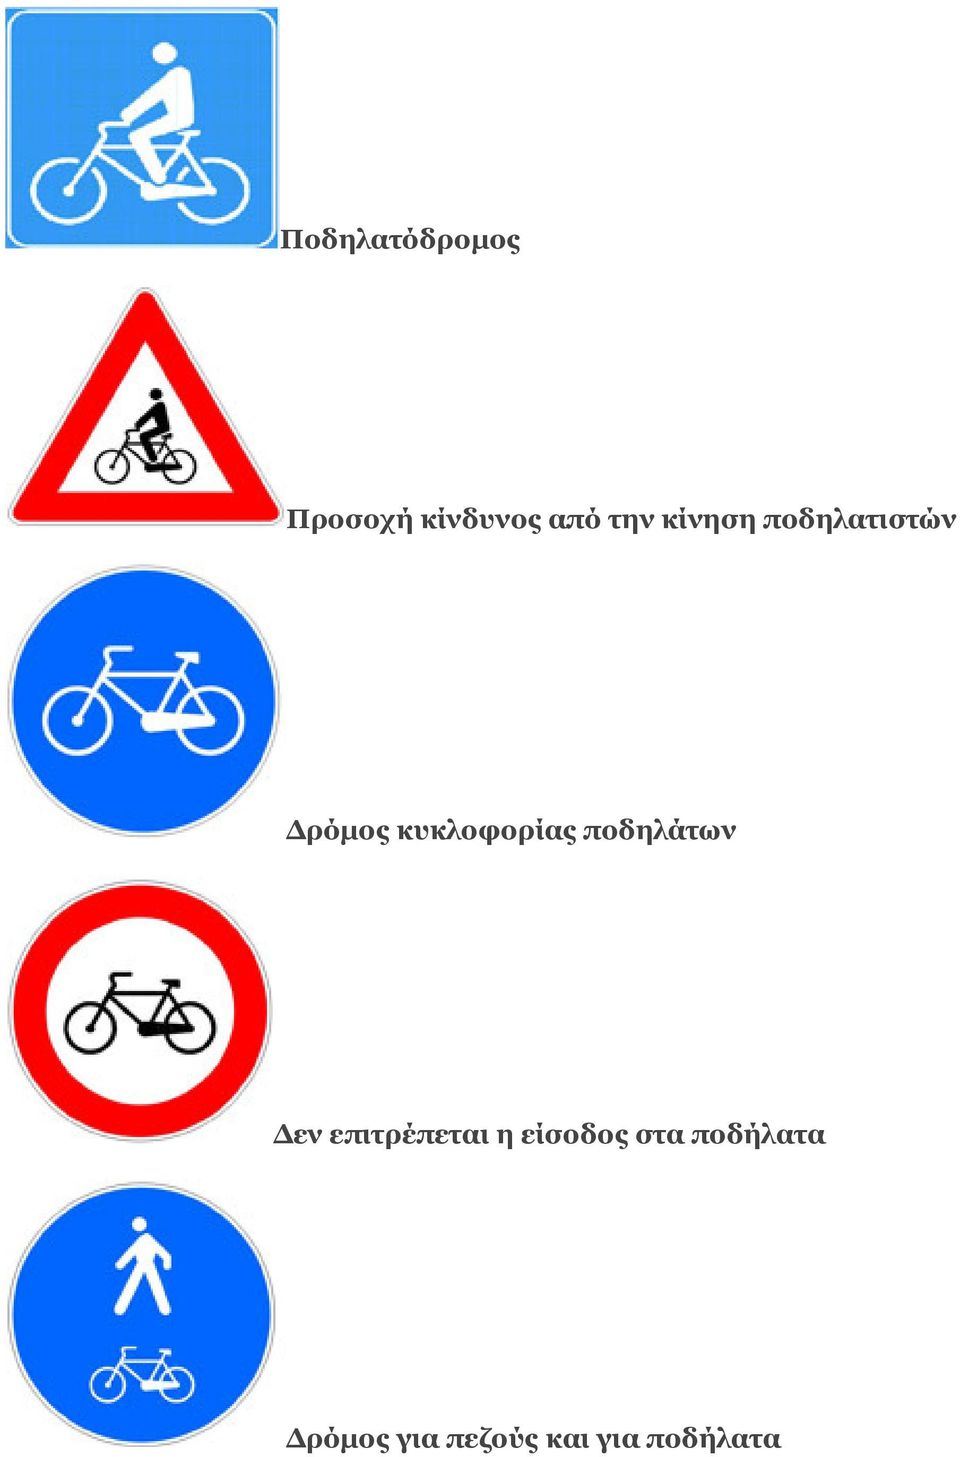 ποδηλάτων εν επιτρέπεται η είσοδος στα